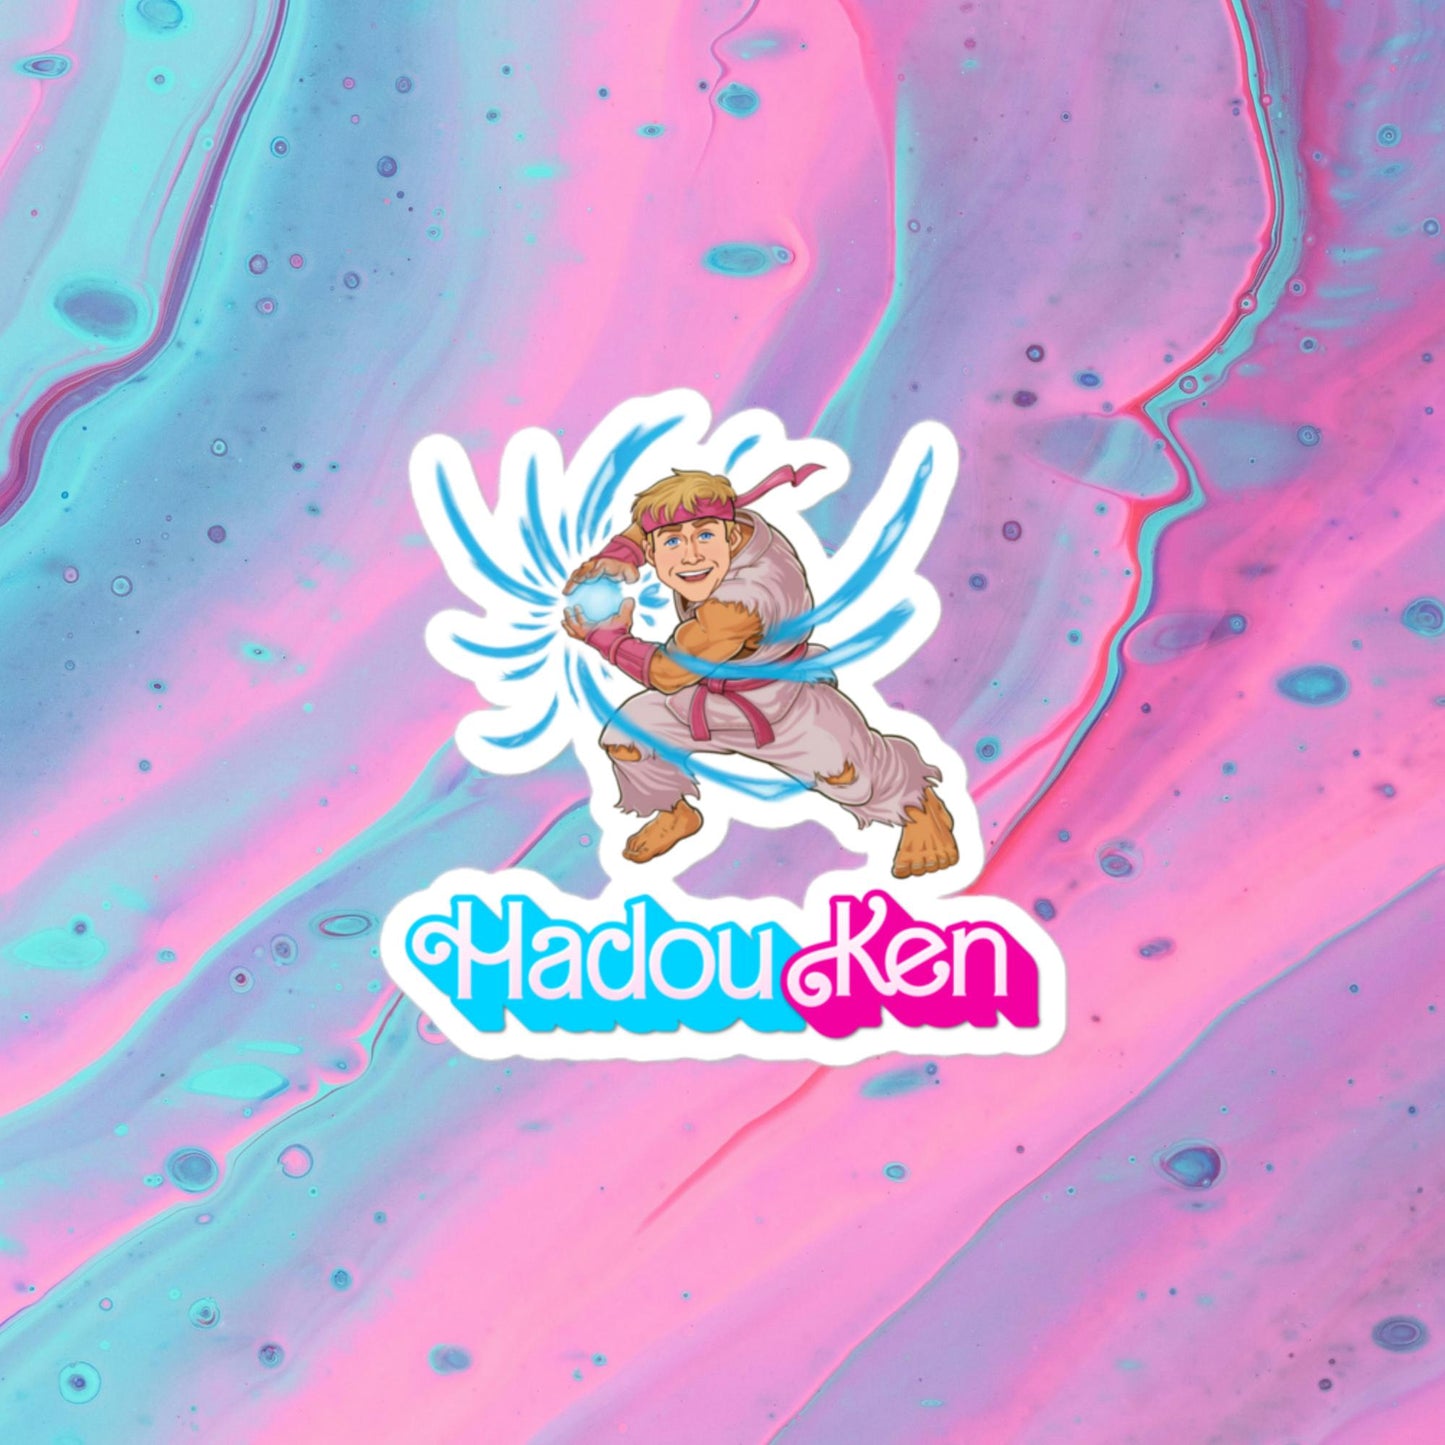 Hadouken Ken Barbie Ryan Gosling Street Fighter Funny Bubble-free stickers